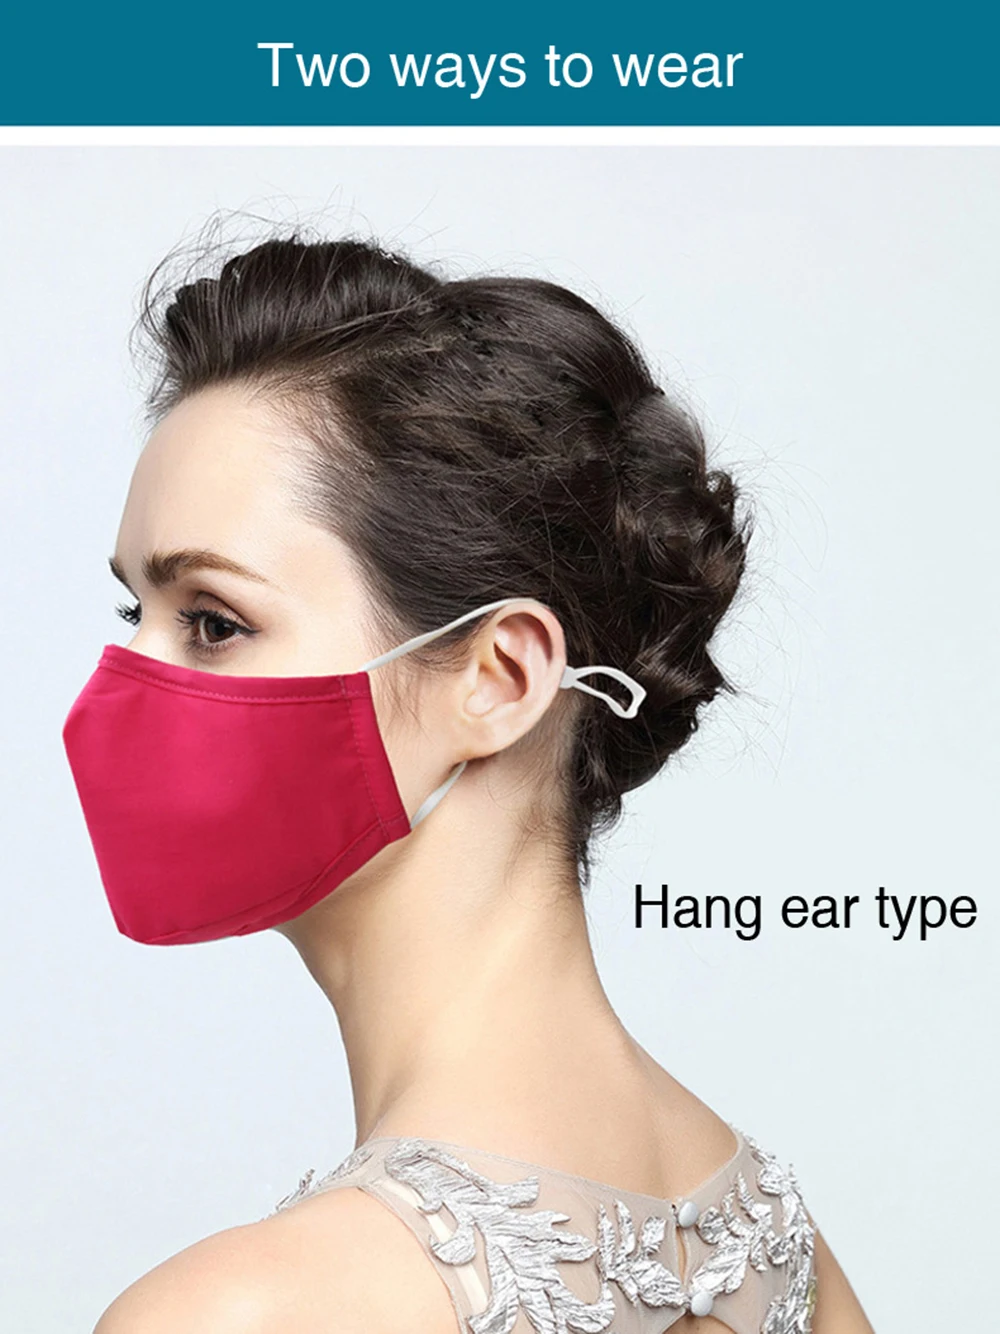 Дыхательный клапан хлопок Анти-пыль рот маска PM2.5 анти дымка маска унисекс фильтр с активированным углем респиратор рот Муфельная маска лицо